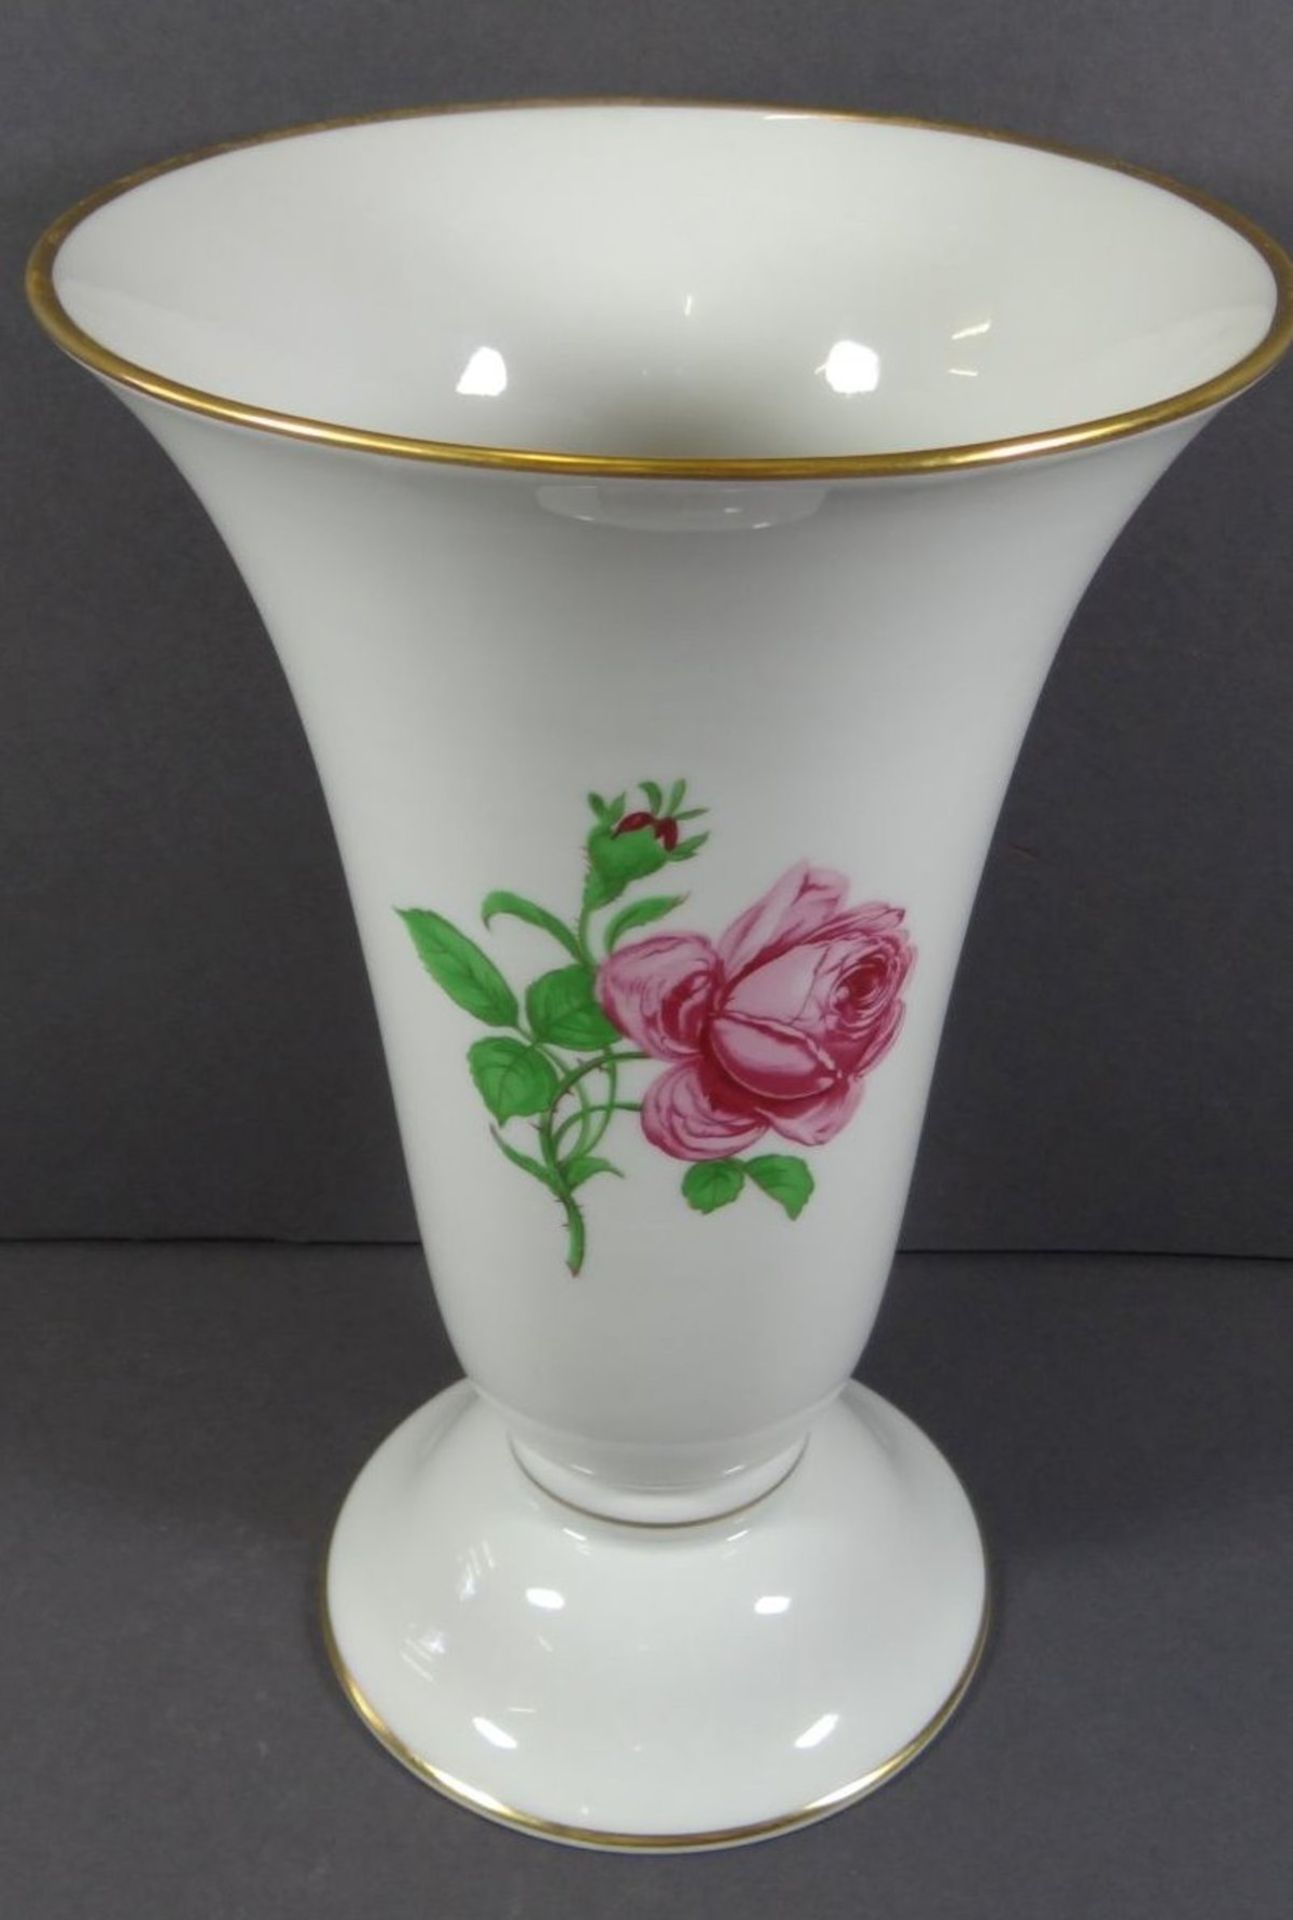 gr. Vase mit Stand "Fürstenberg" rote Rose, H-24 cm - Image 2 of 6